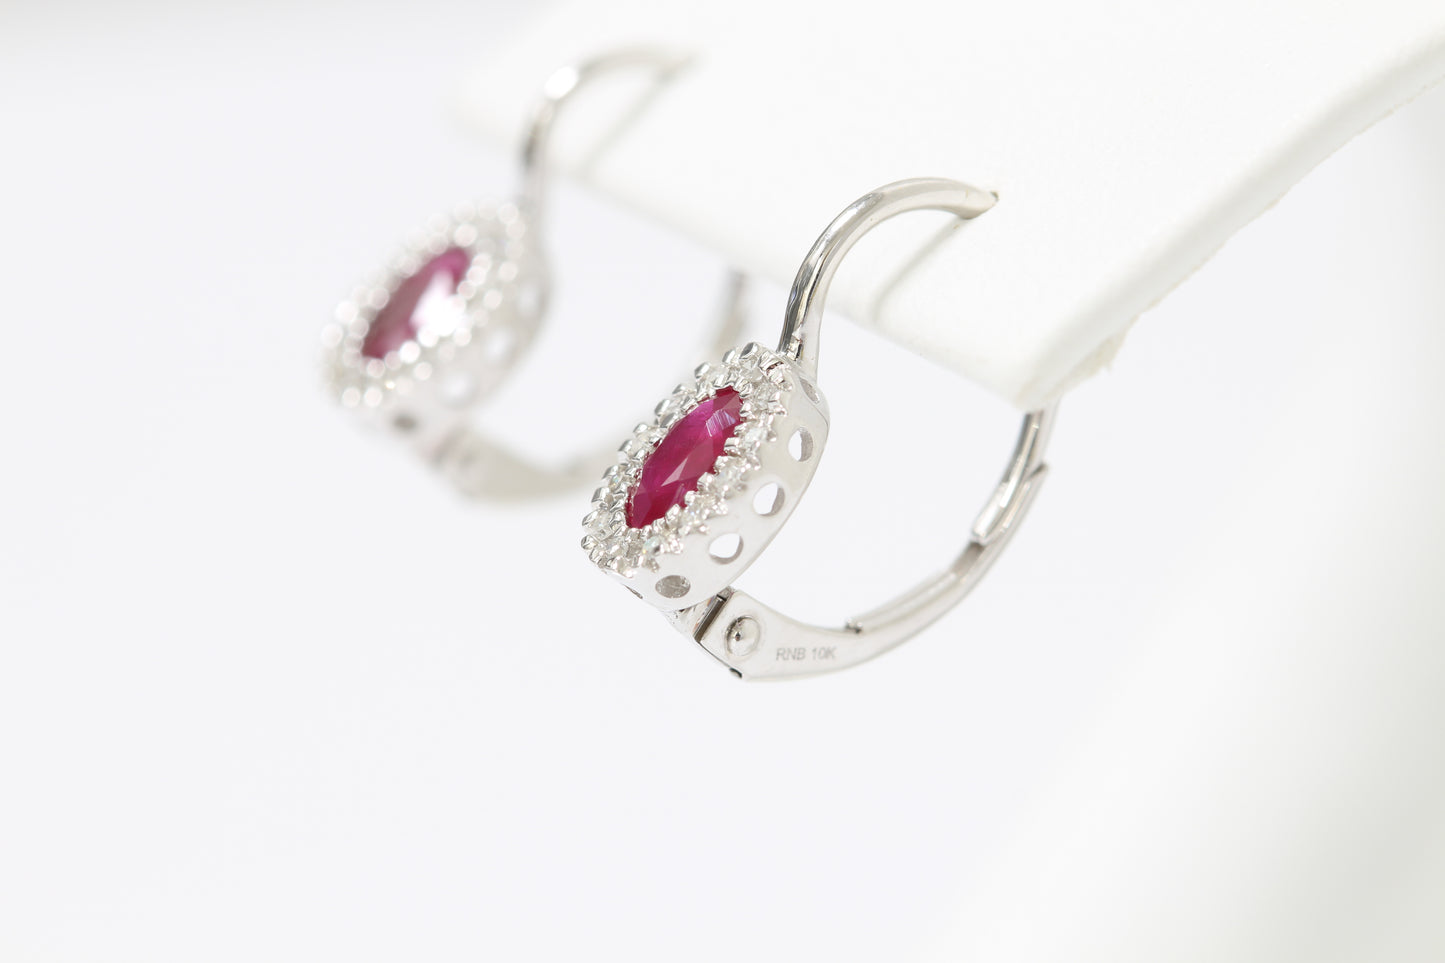 10k Ruby & diamond earrings